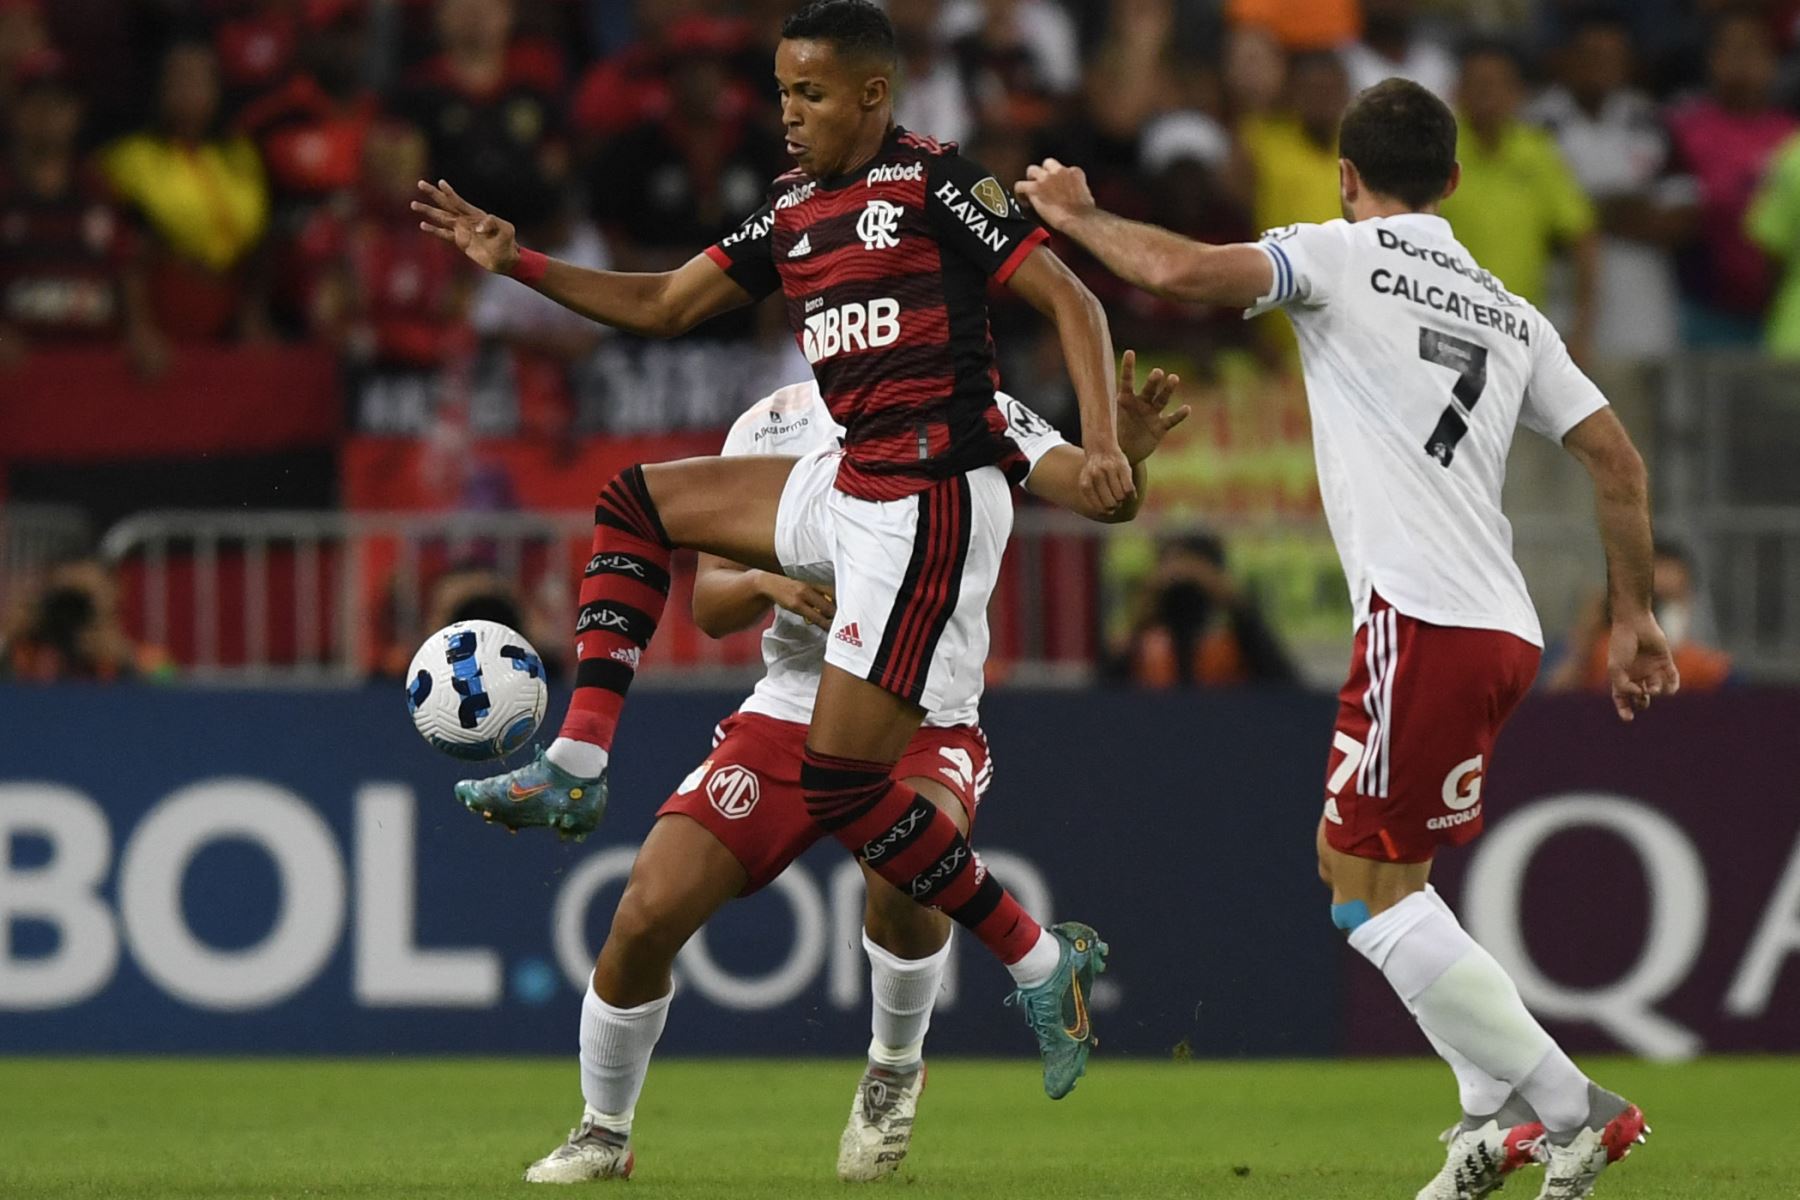 El jugador del Flamengo Lázaro (izquierda) y Horacio Calcaterra  del Sporting Cristal (derecha) compiten por el balón durante el partido de fútbol del día de hoy por la fase de grupos de la Copa Libertadores, en el estadio Maracaná de Río de Janeiro.
Foto: AFP